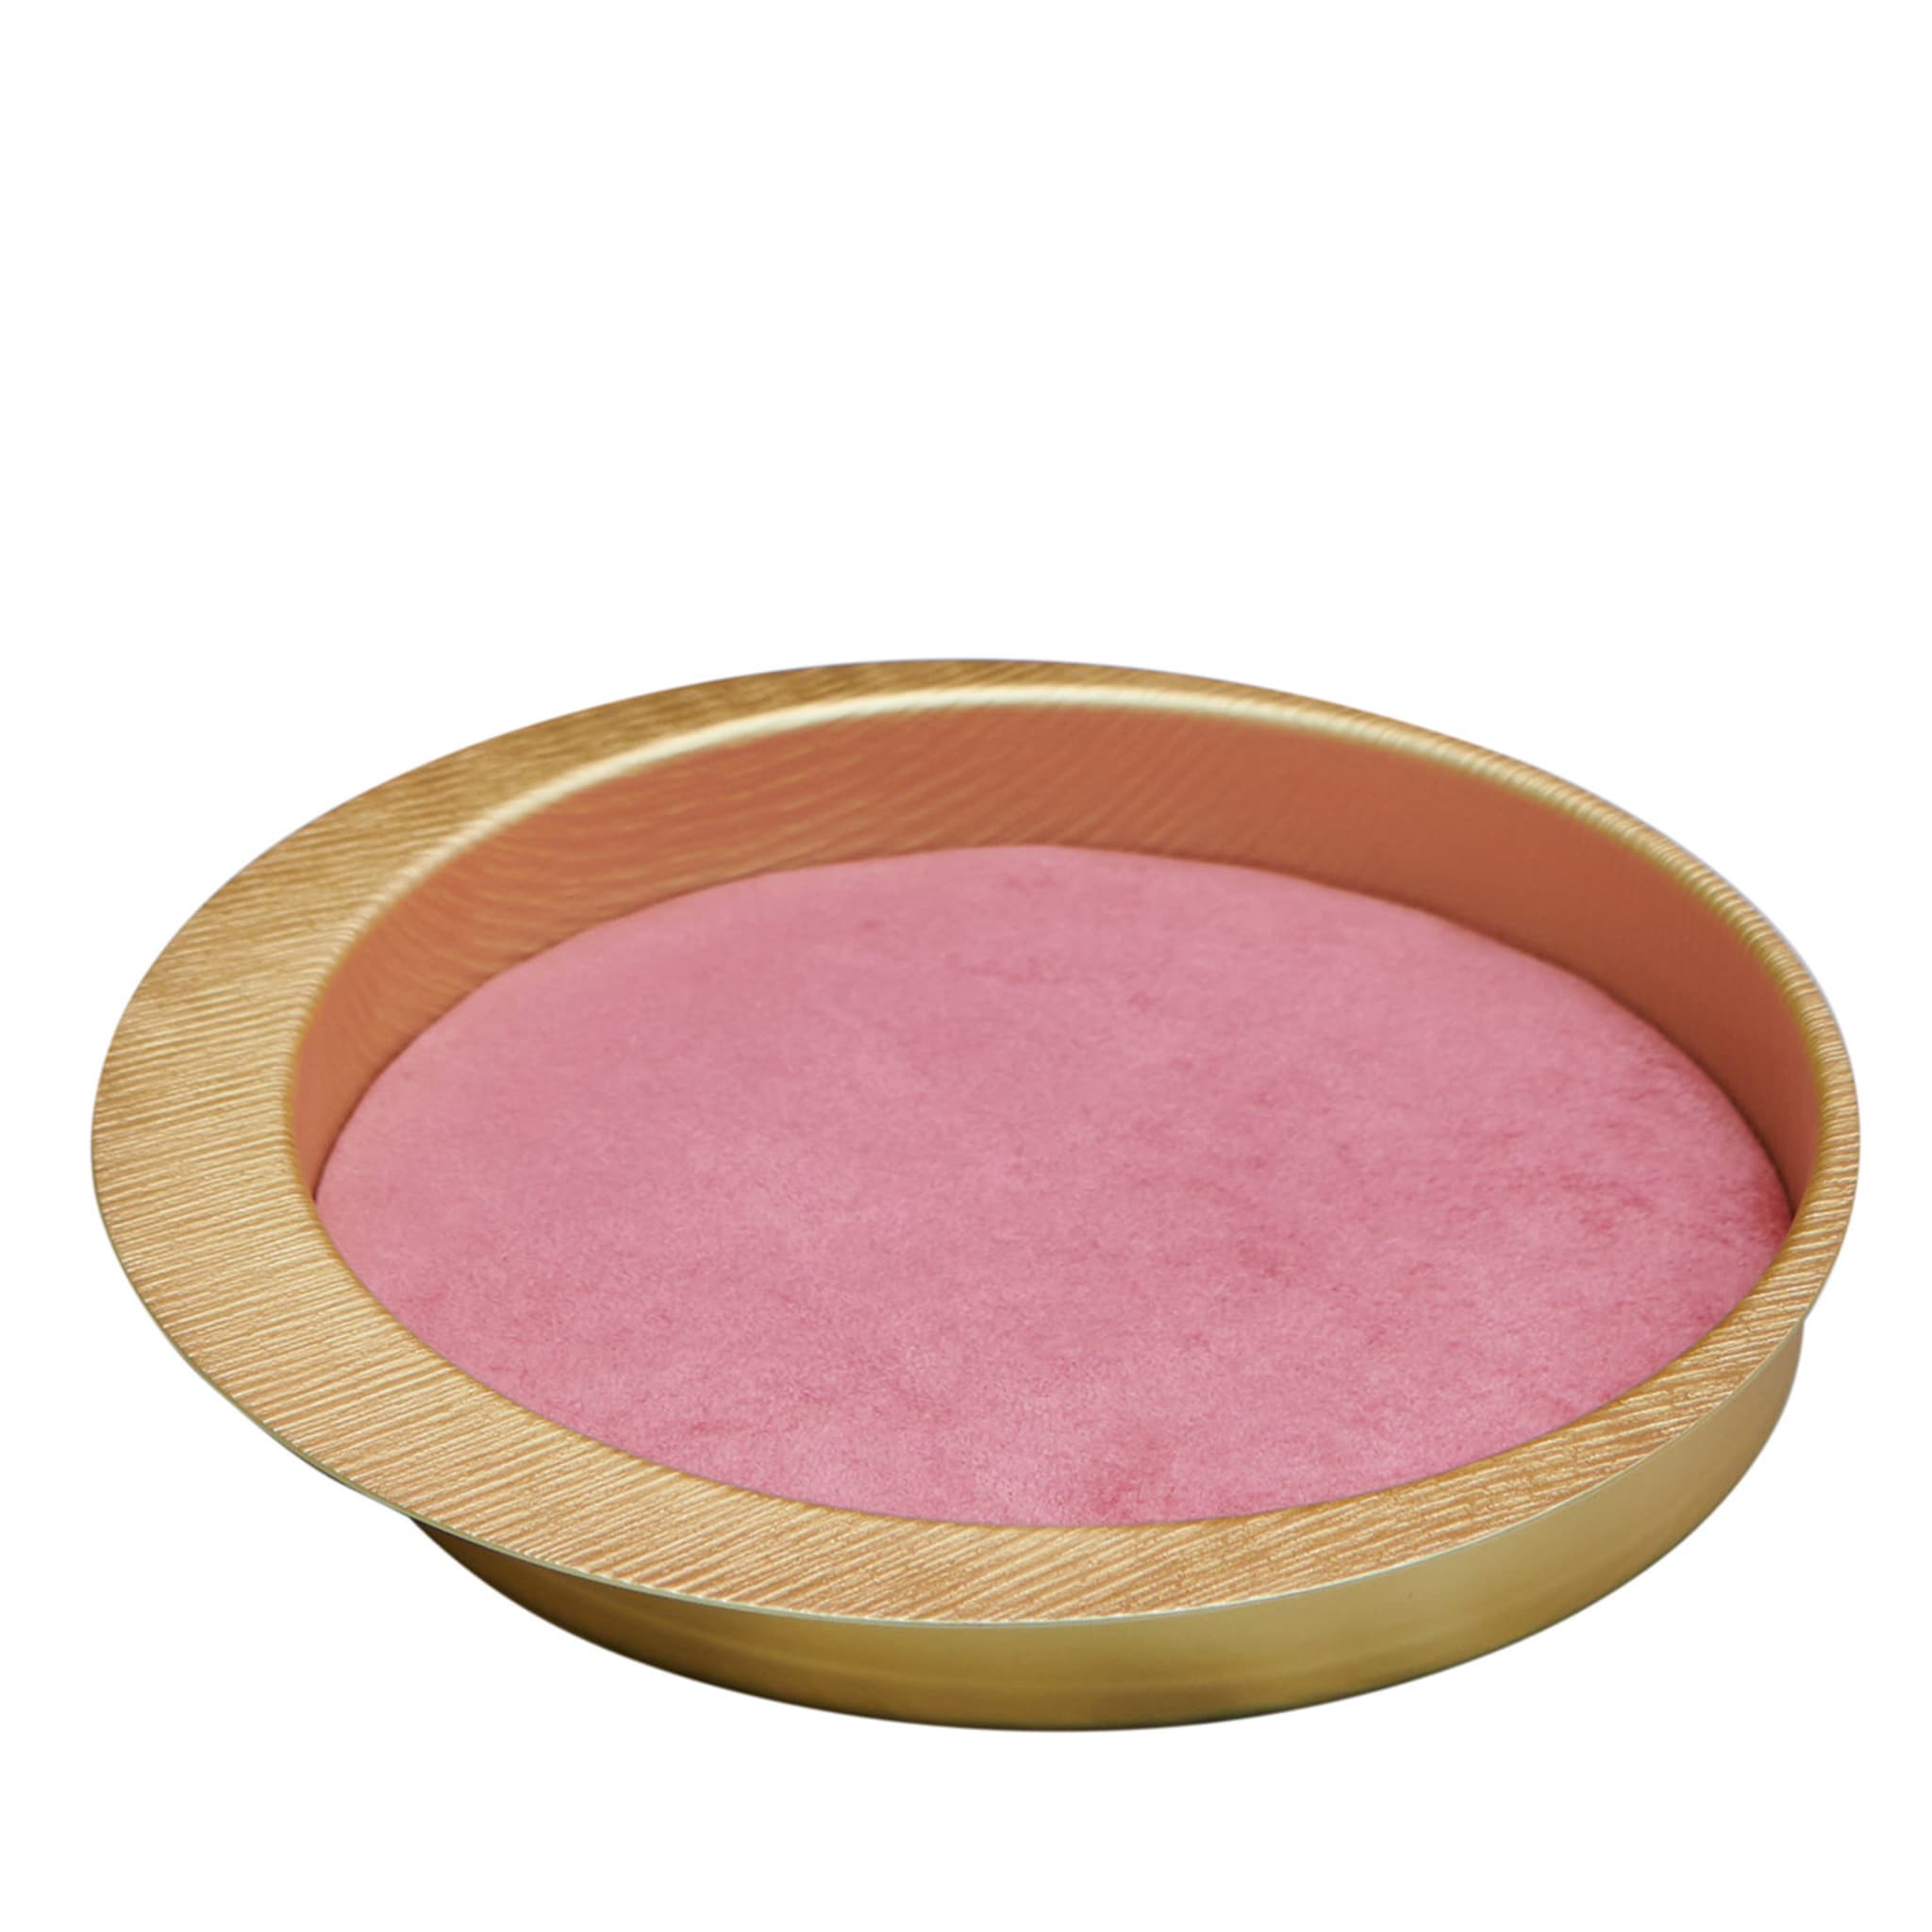 Firenze Vassoio tondo oro e rosa con tasca vuota - Vista principale